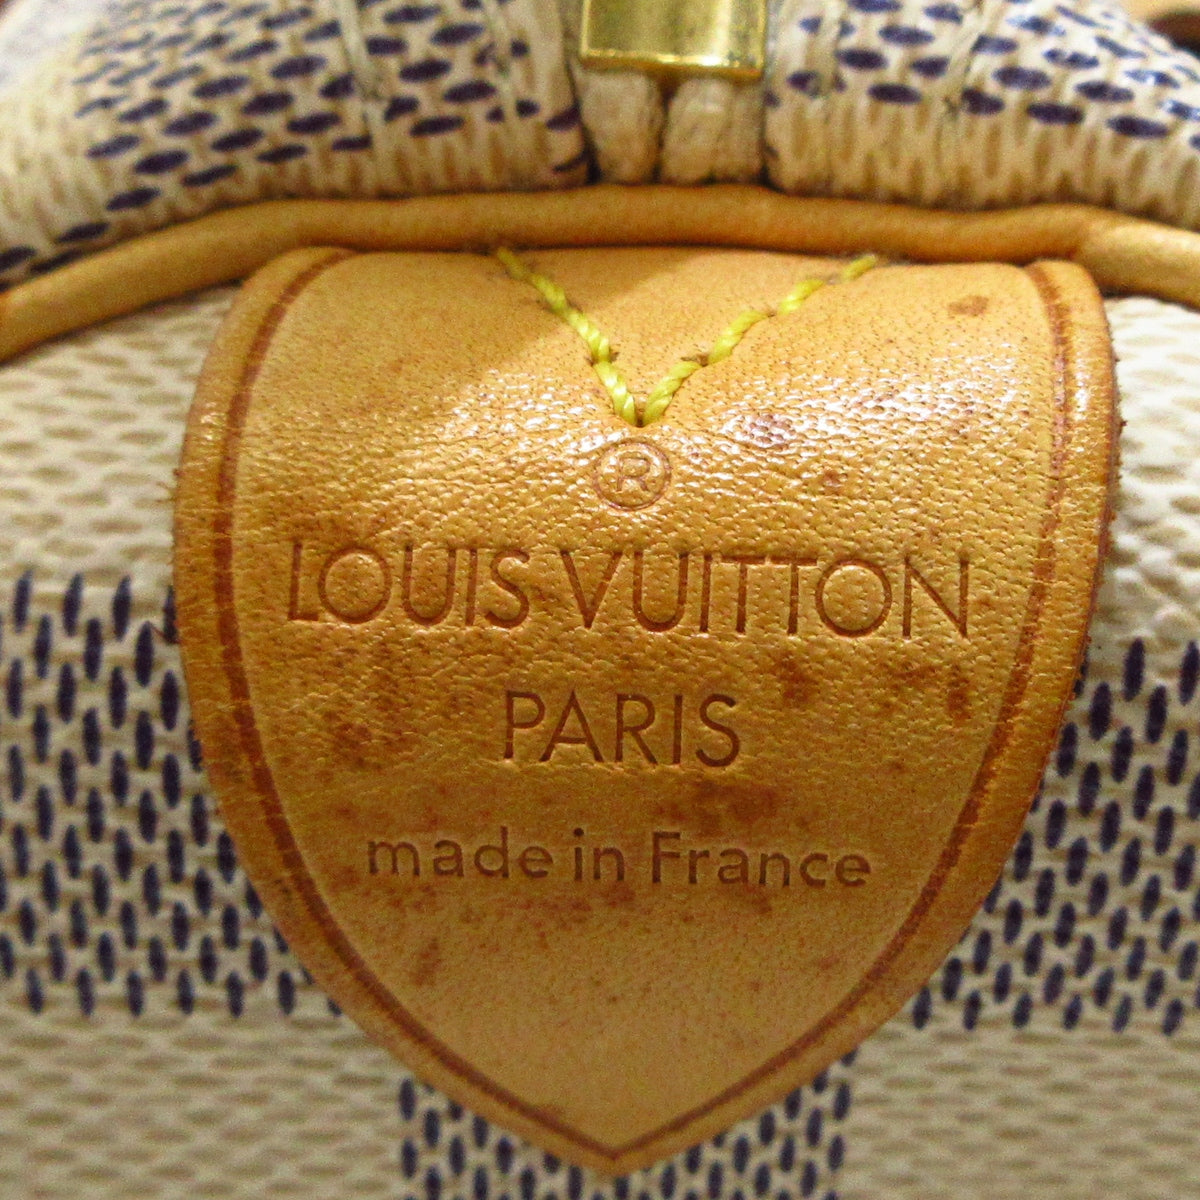 Louis Vuitton Damier Ebene Speedy 25 Τσάντα